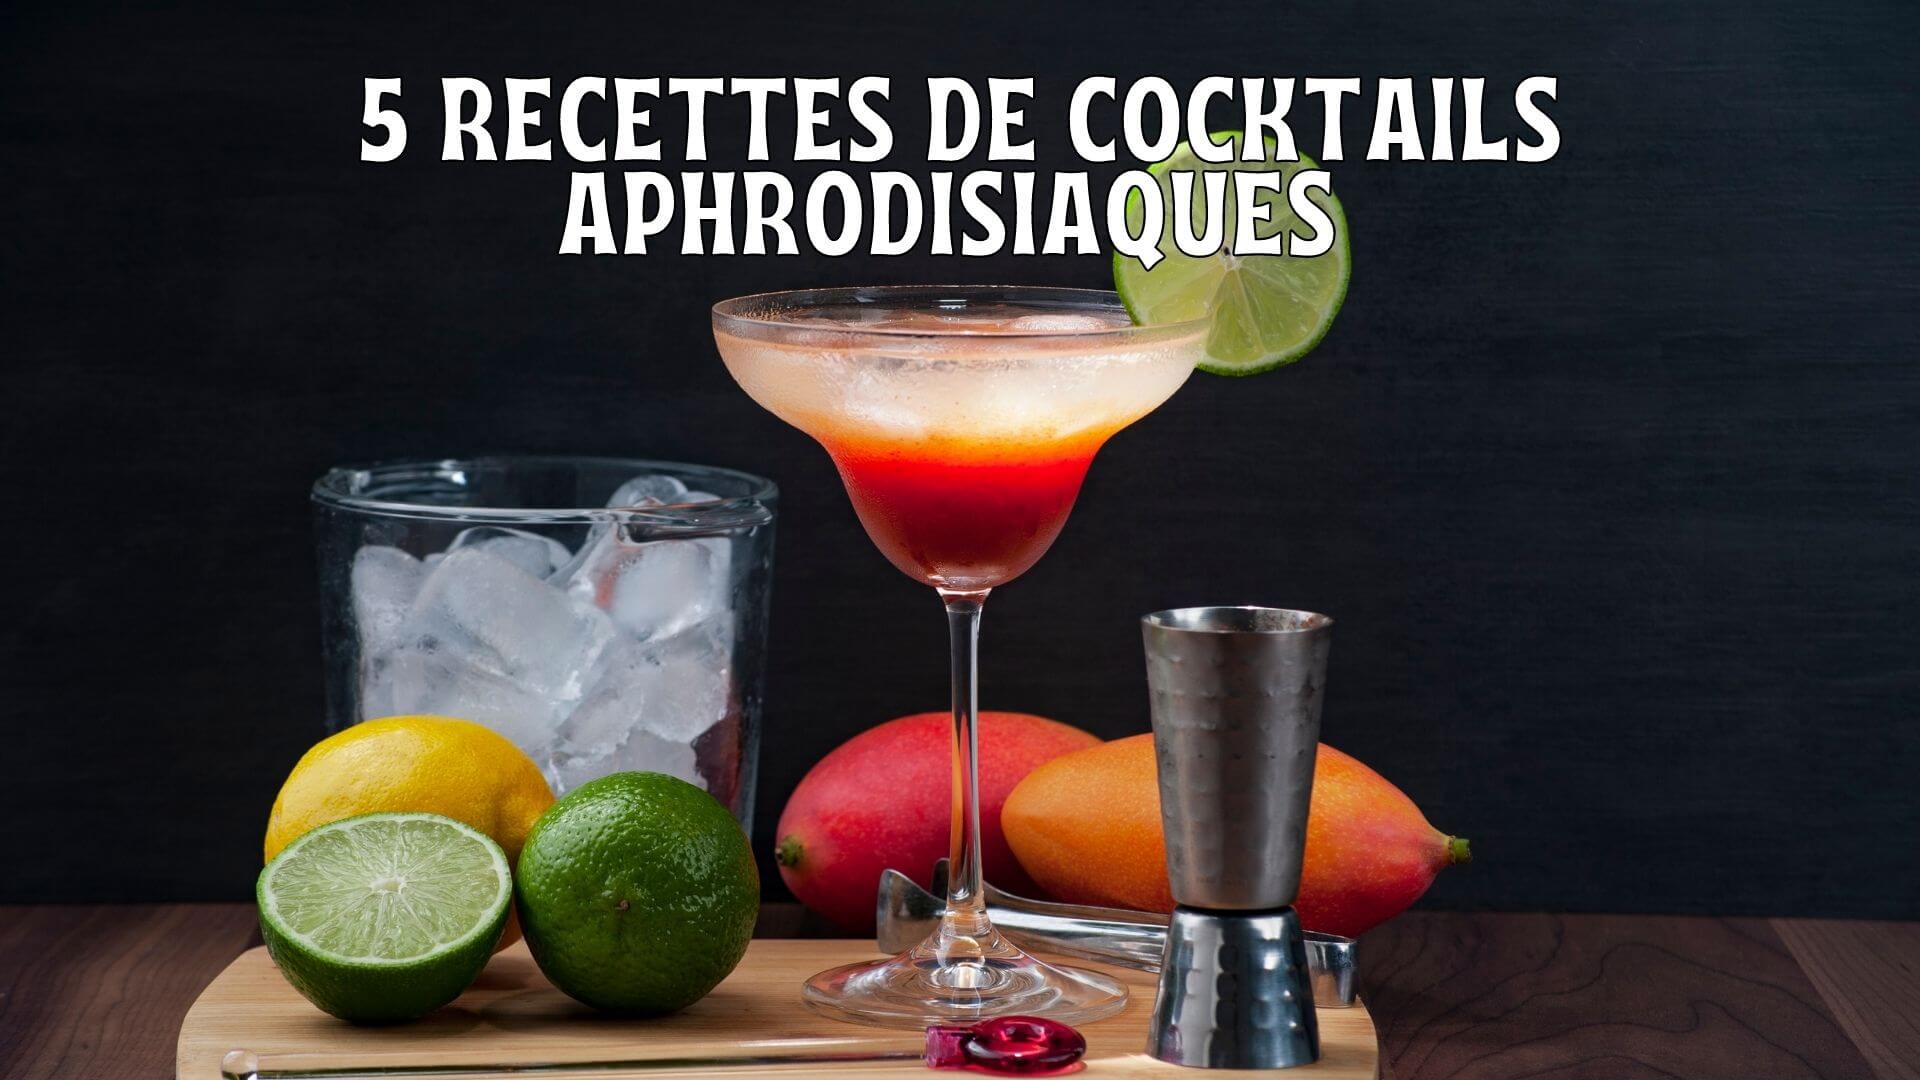 5 recettes de cocktails aphrodisiaques pour faire vibrer votre destinée